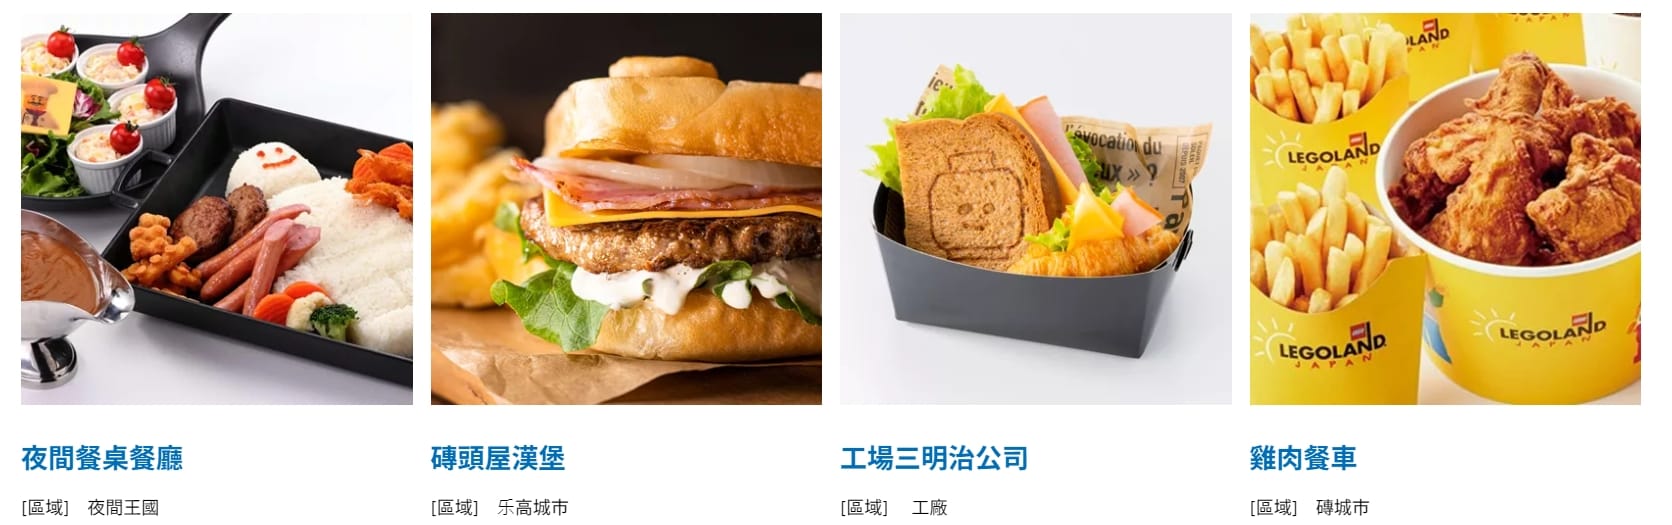 名古屋樂高樂園美食餐廳|磚頭屋漢堡(Brick House Burger)、積木漢堡薯條